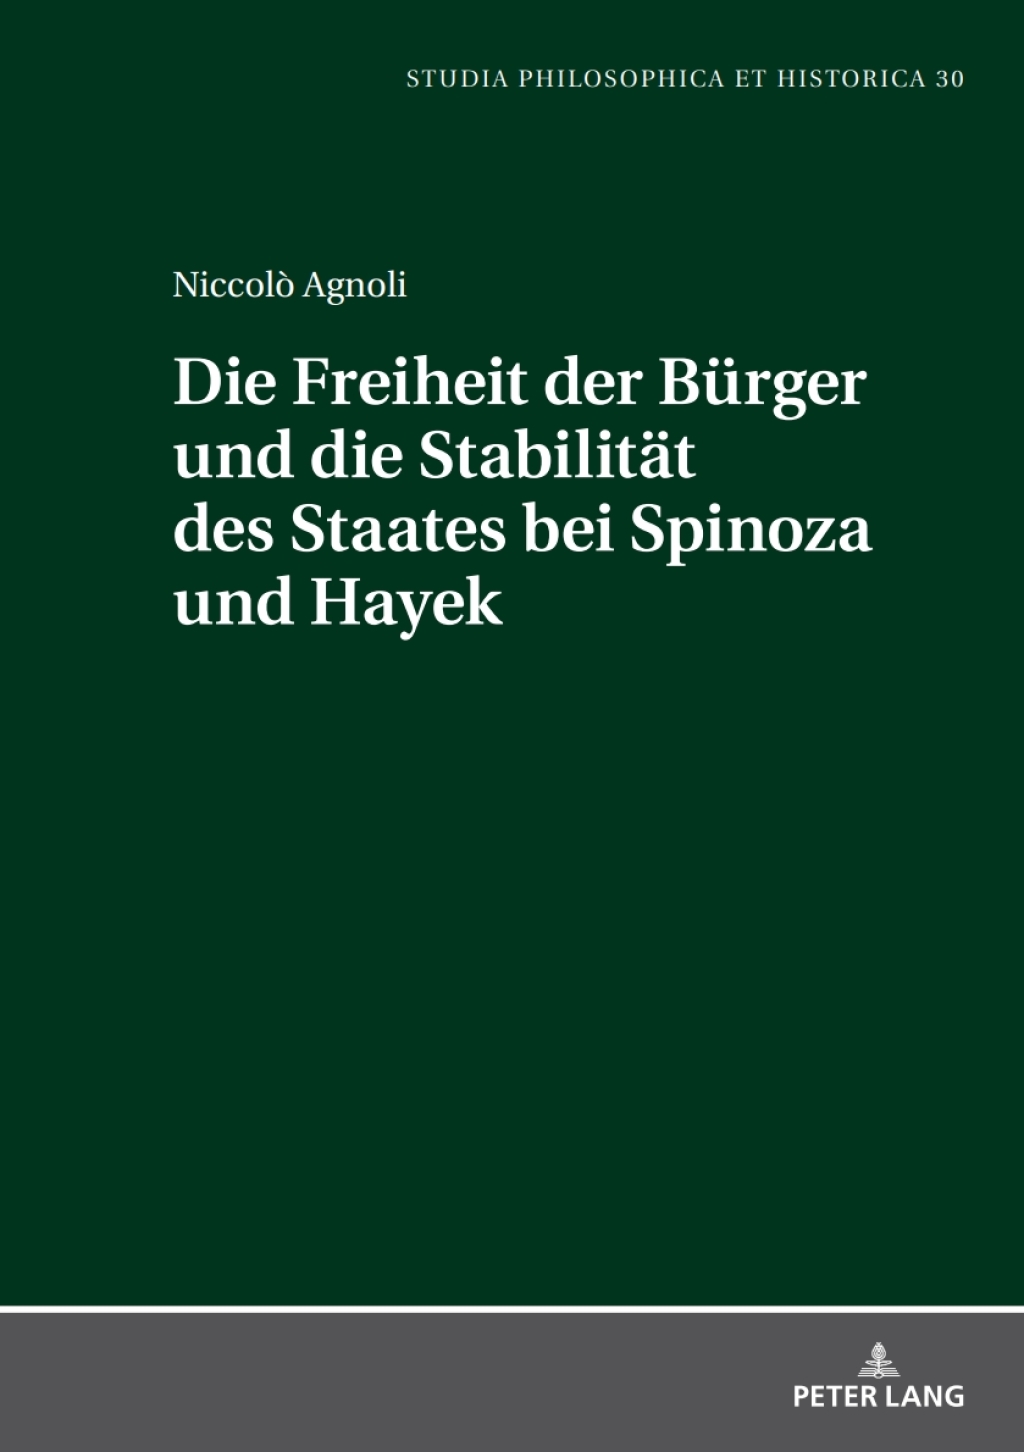 Die Freiheit der Buerger und die Stabiltaet des Staates bei Spinoza und Hayek (eBook) - NiccolÃ² Agnoli